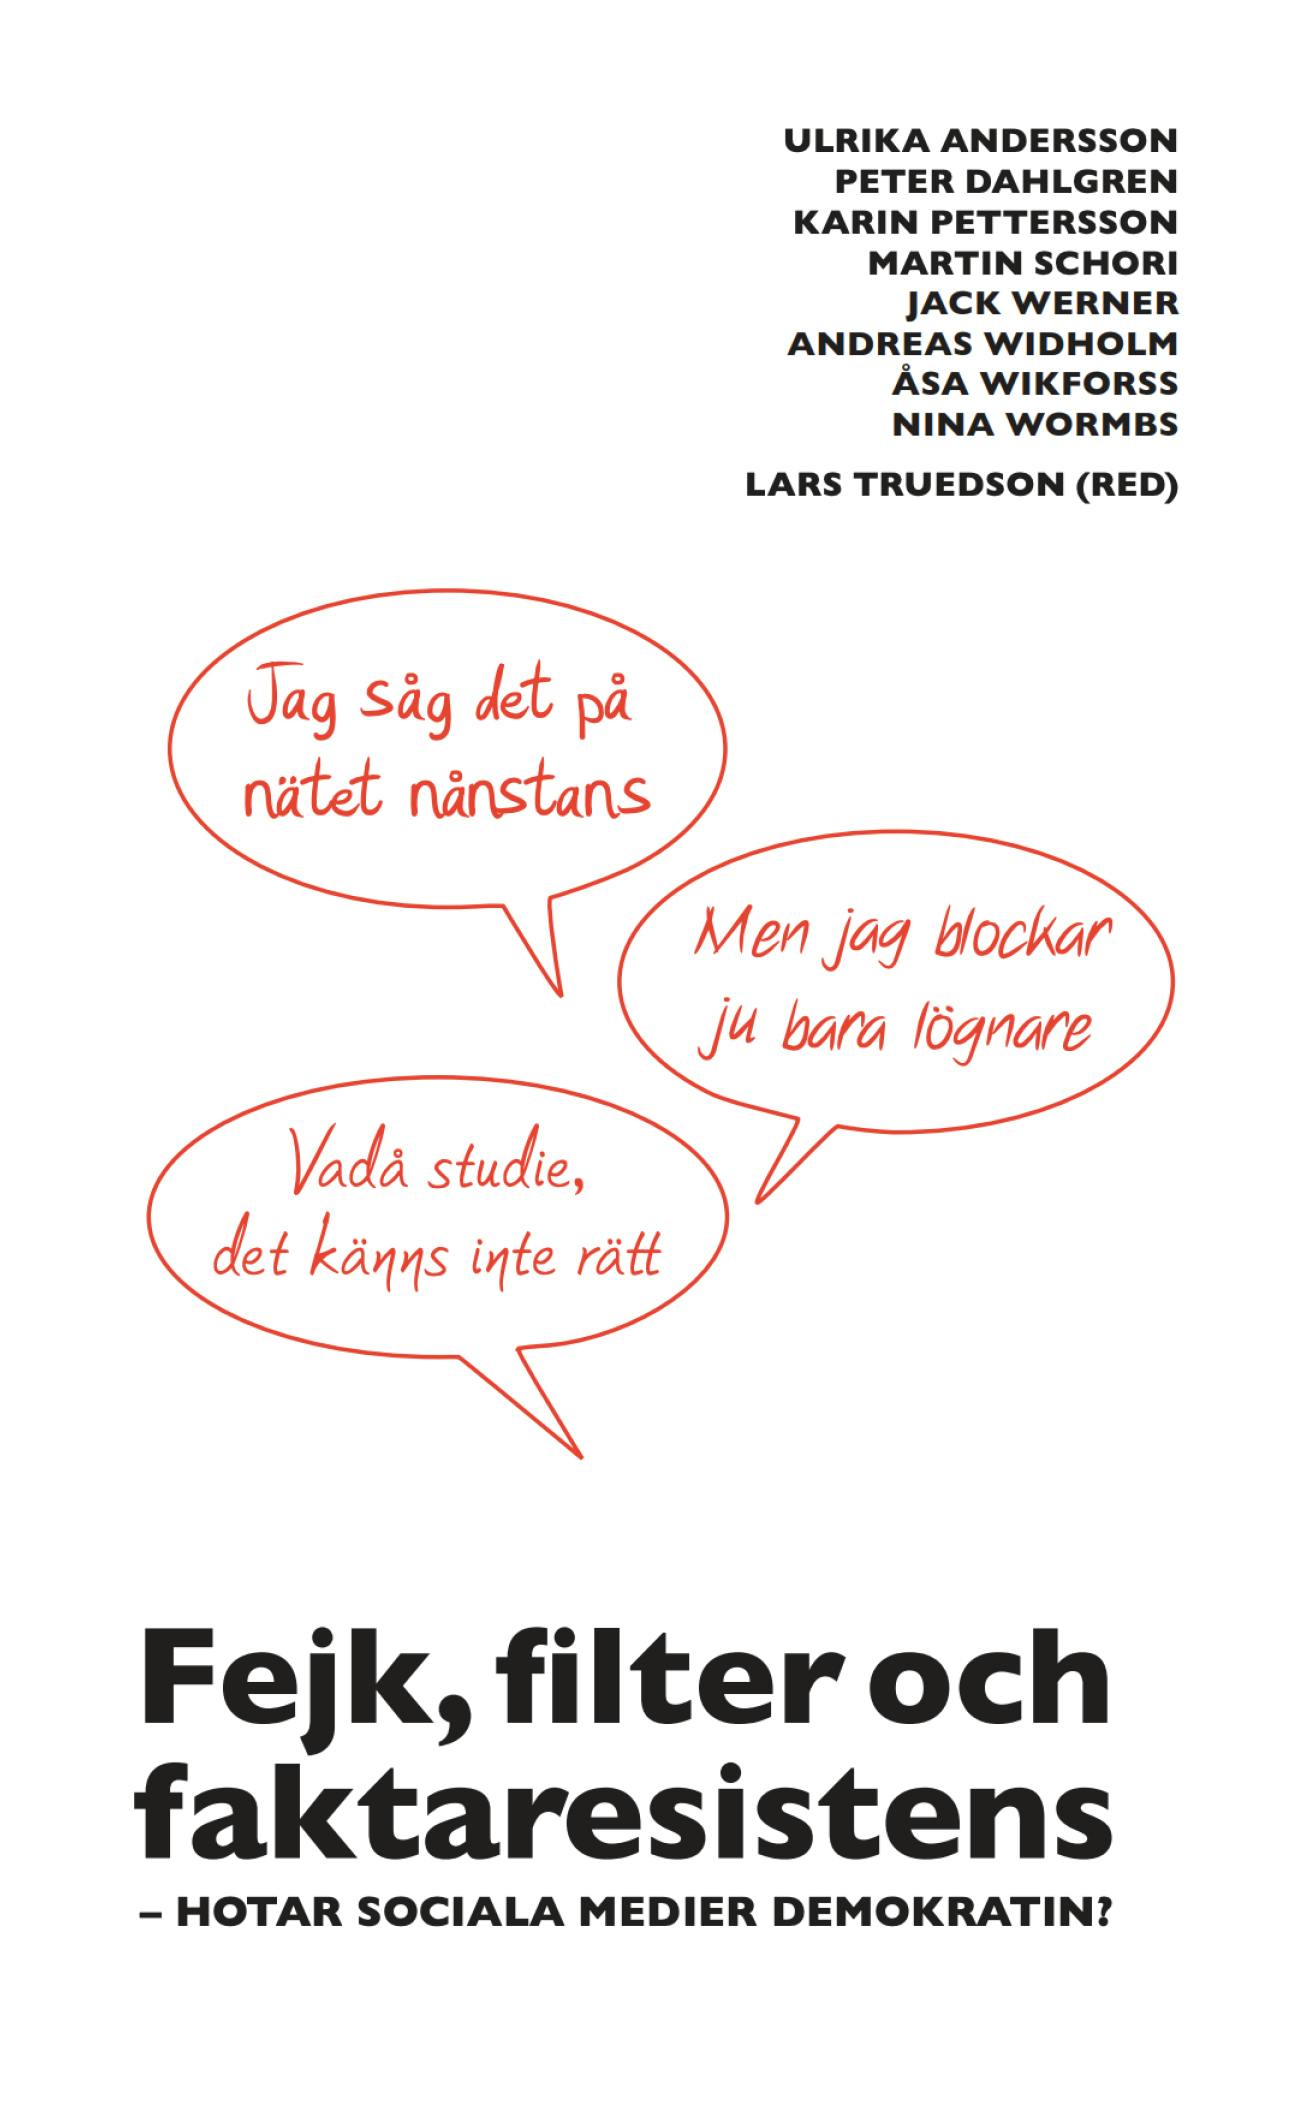 Report: Fejk, filter och faktaresistens cover image